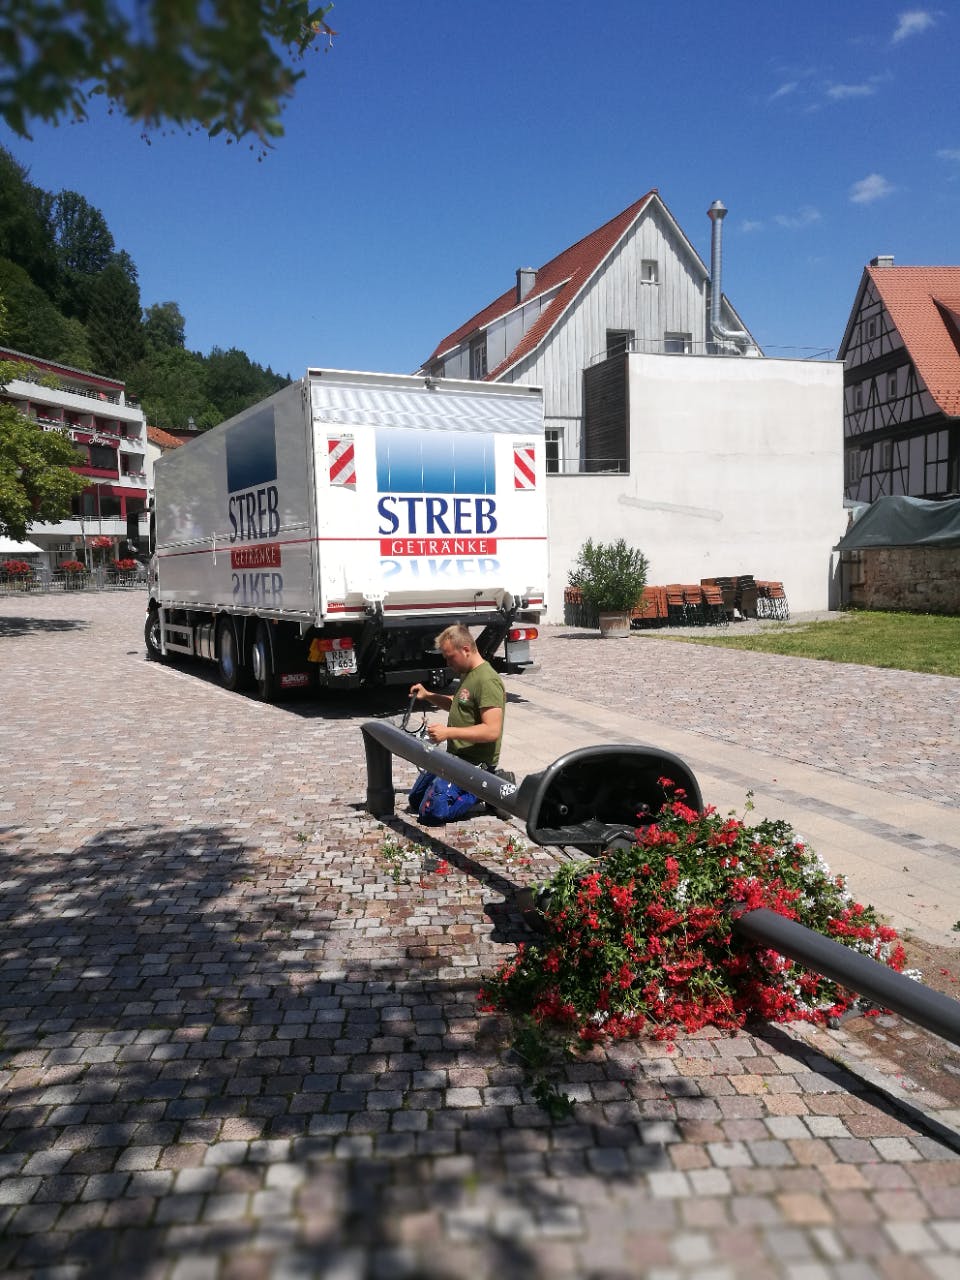 Rund 2.000 Euro beträgt der geschätzte Schaden, den ein unachtsamer LKW-Fahrer auf dem Herrenalber Rathausplatz verursacht hat. ©Stadt Bad Herrenalb